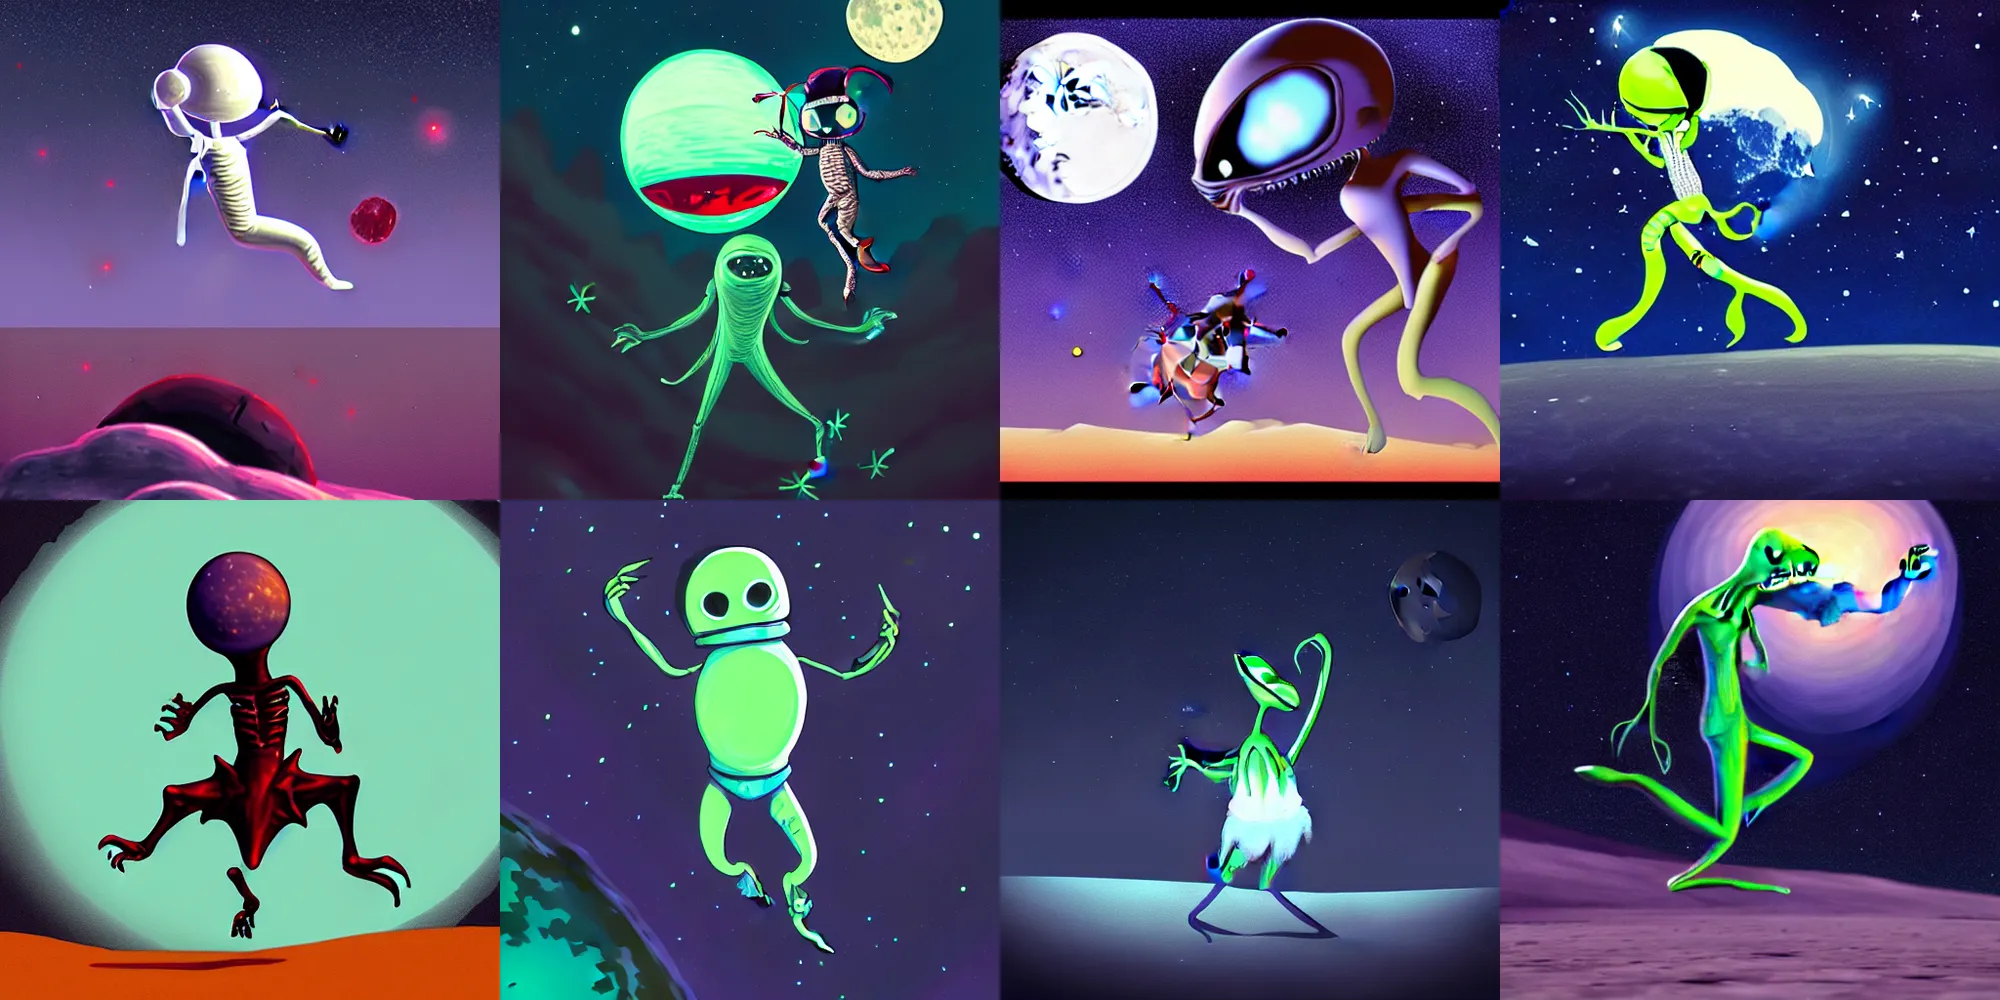 Prompt: Alien dancing on the moon, trending on artstation